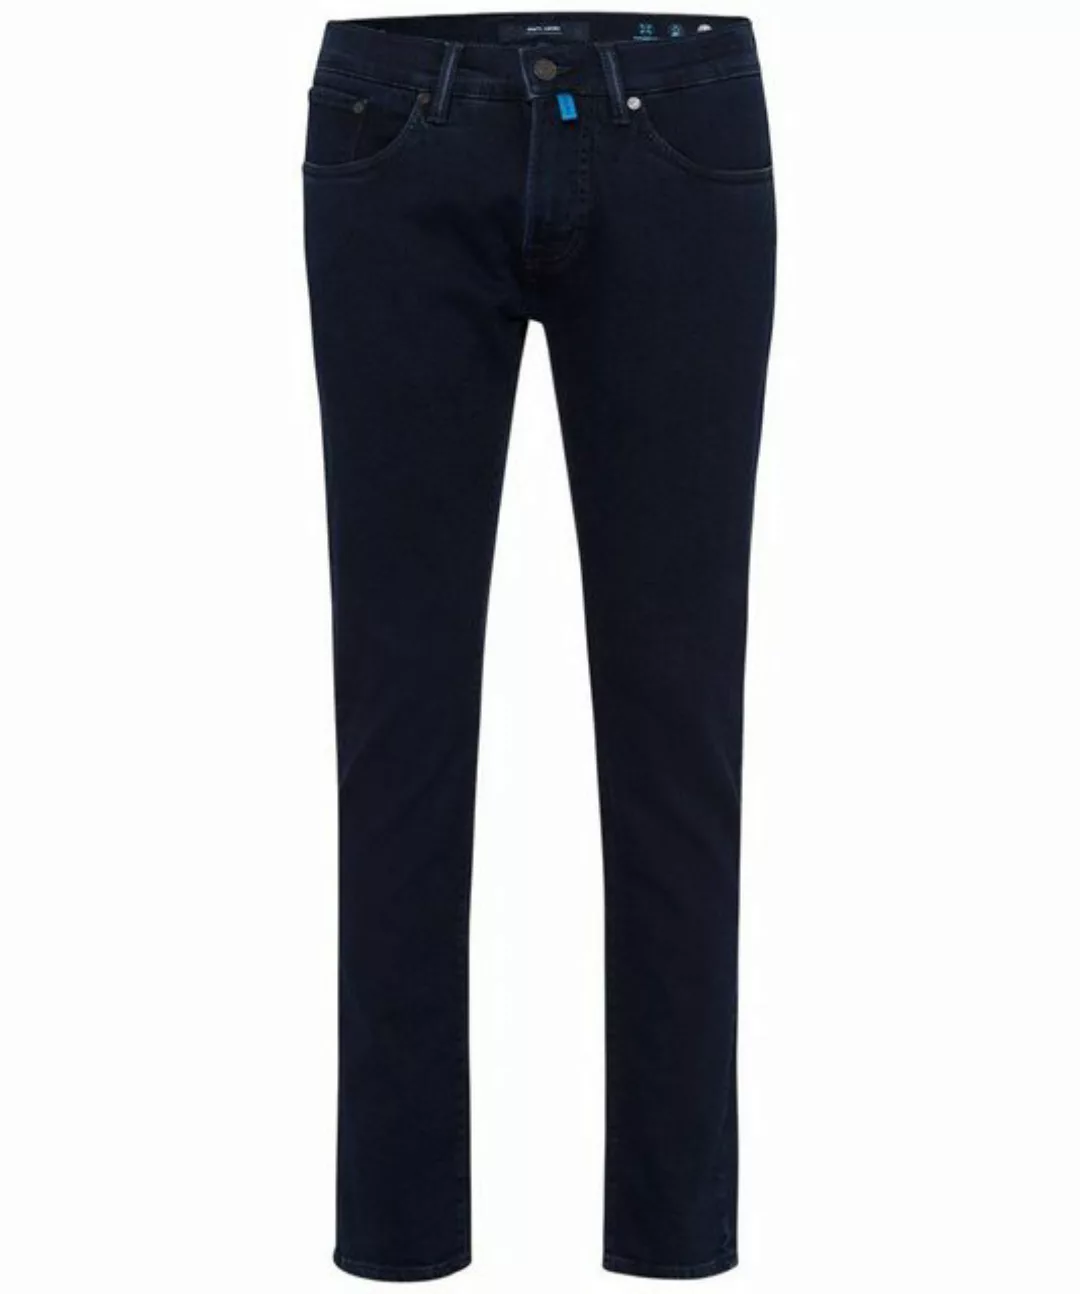 Pierre Cardin 5-Pocket-Jeans PIERRE CARDIN ANTIBES blue/black stonewash 355 günstig online kaufen